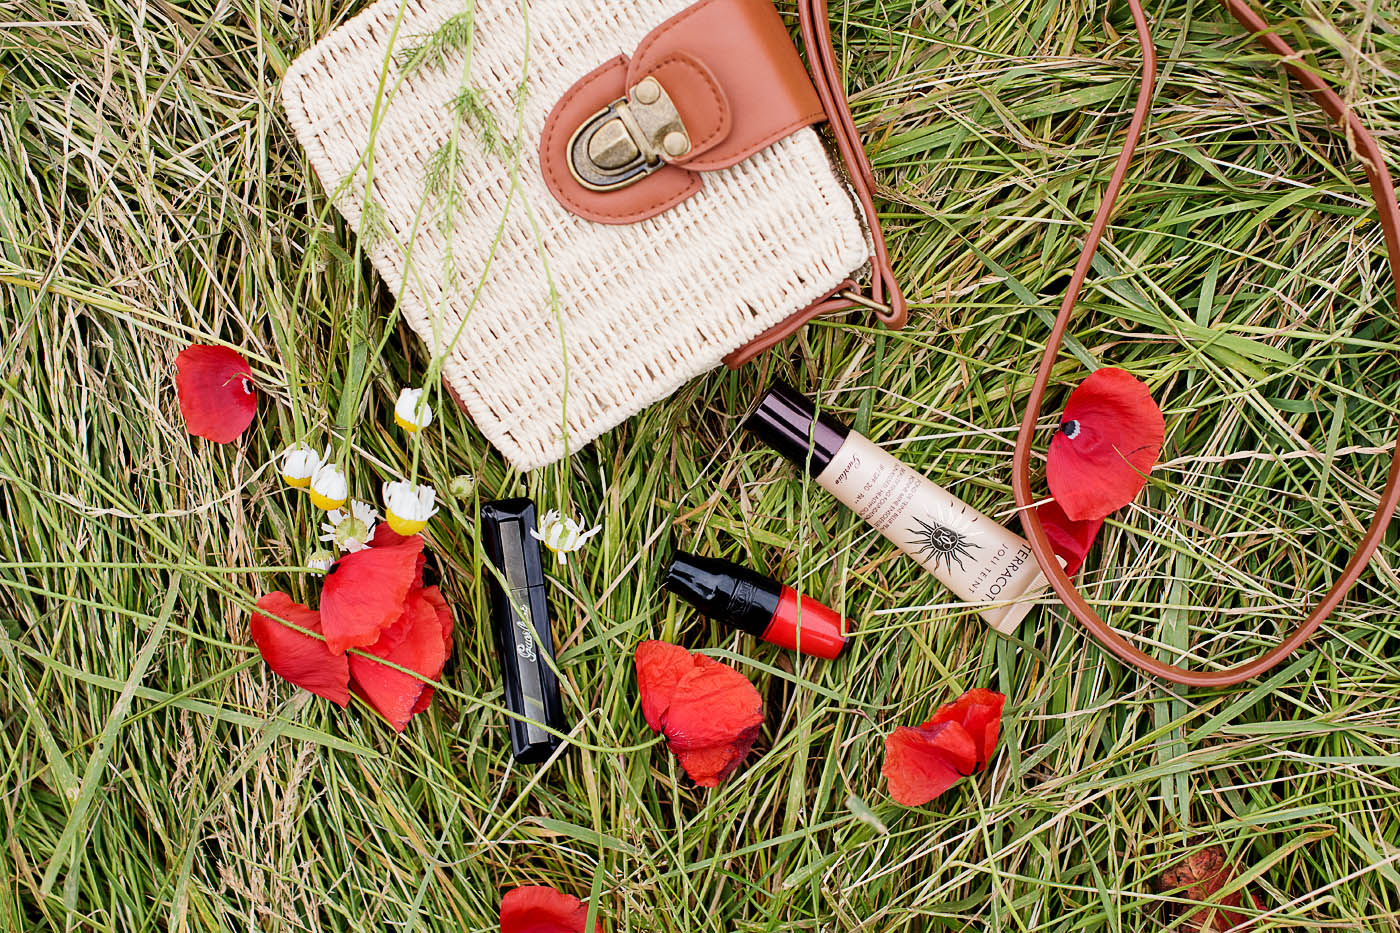 Lancôme-Matte-Shaker-testbericht-Guerlain-Makeup-beautyblog